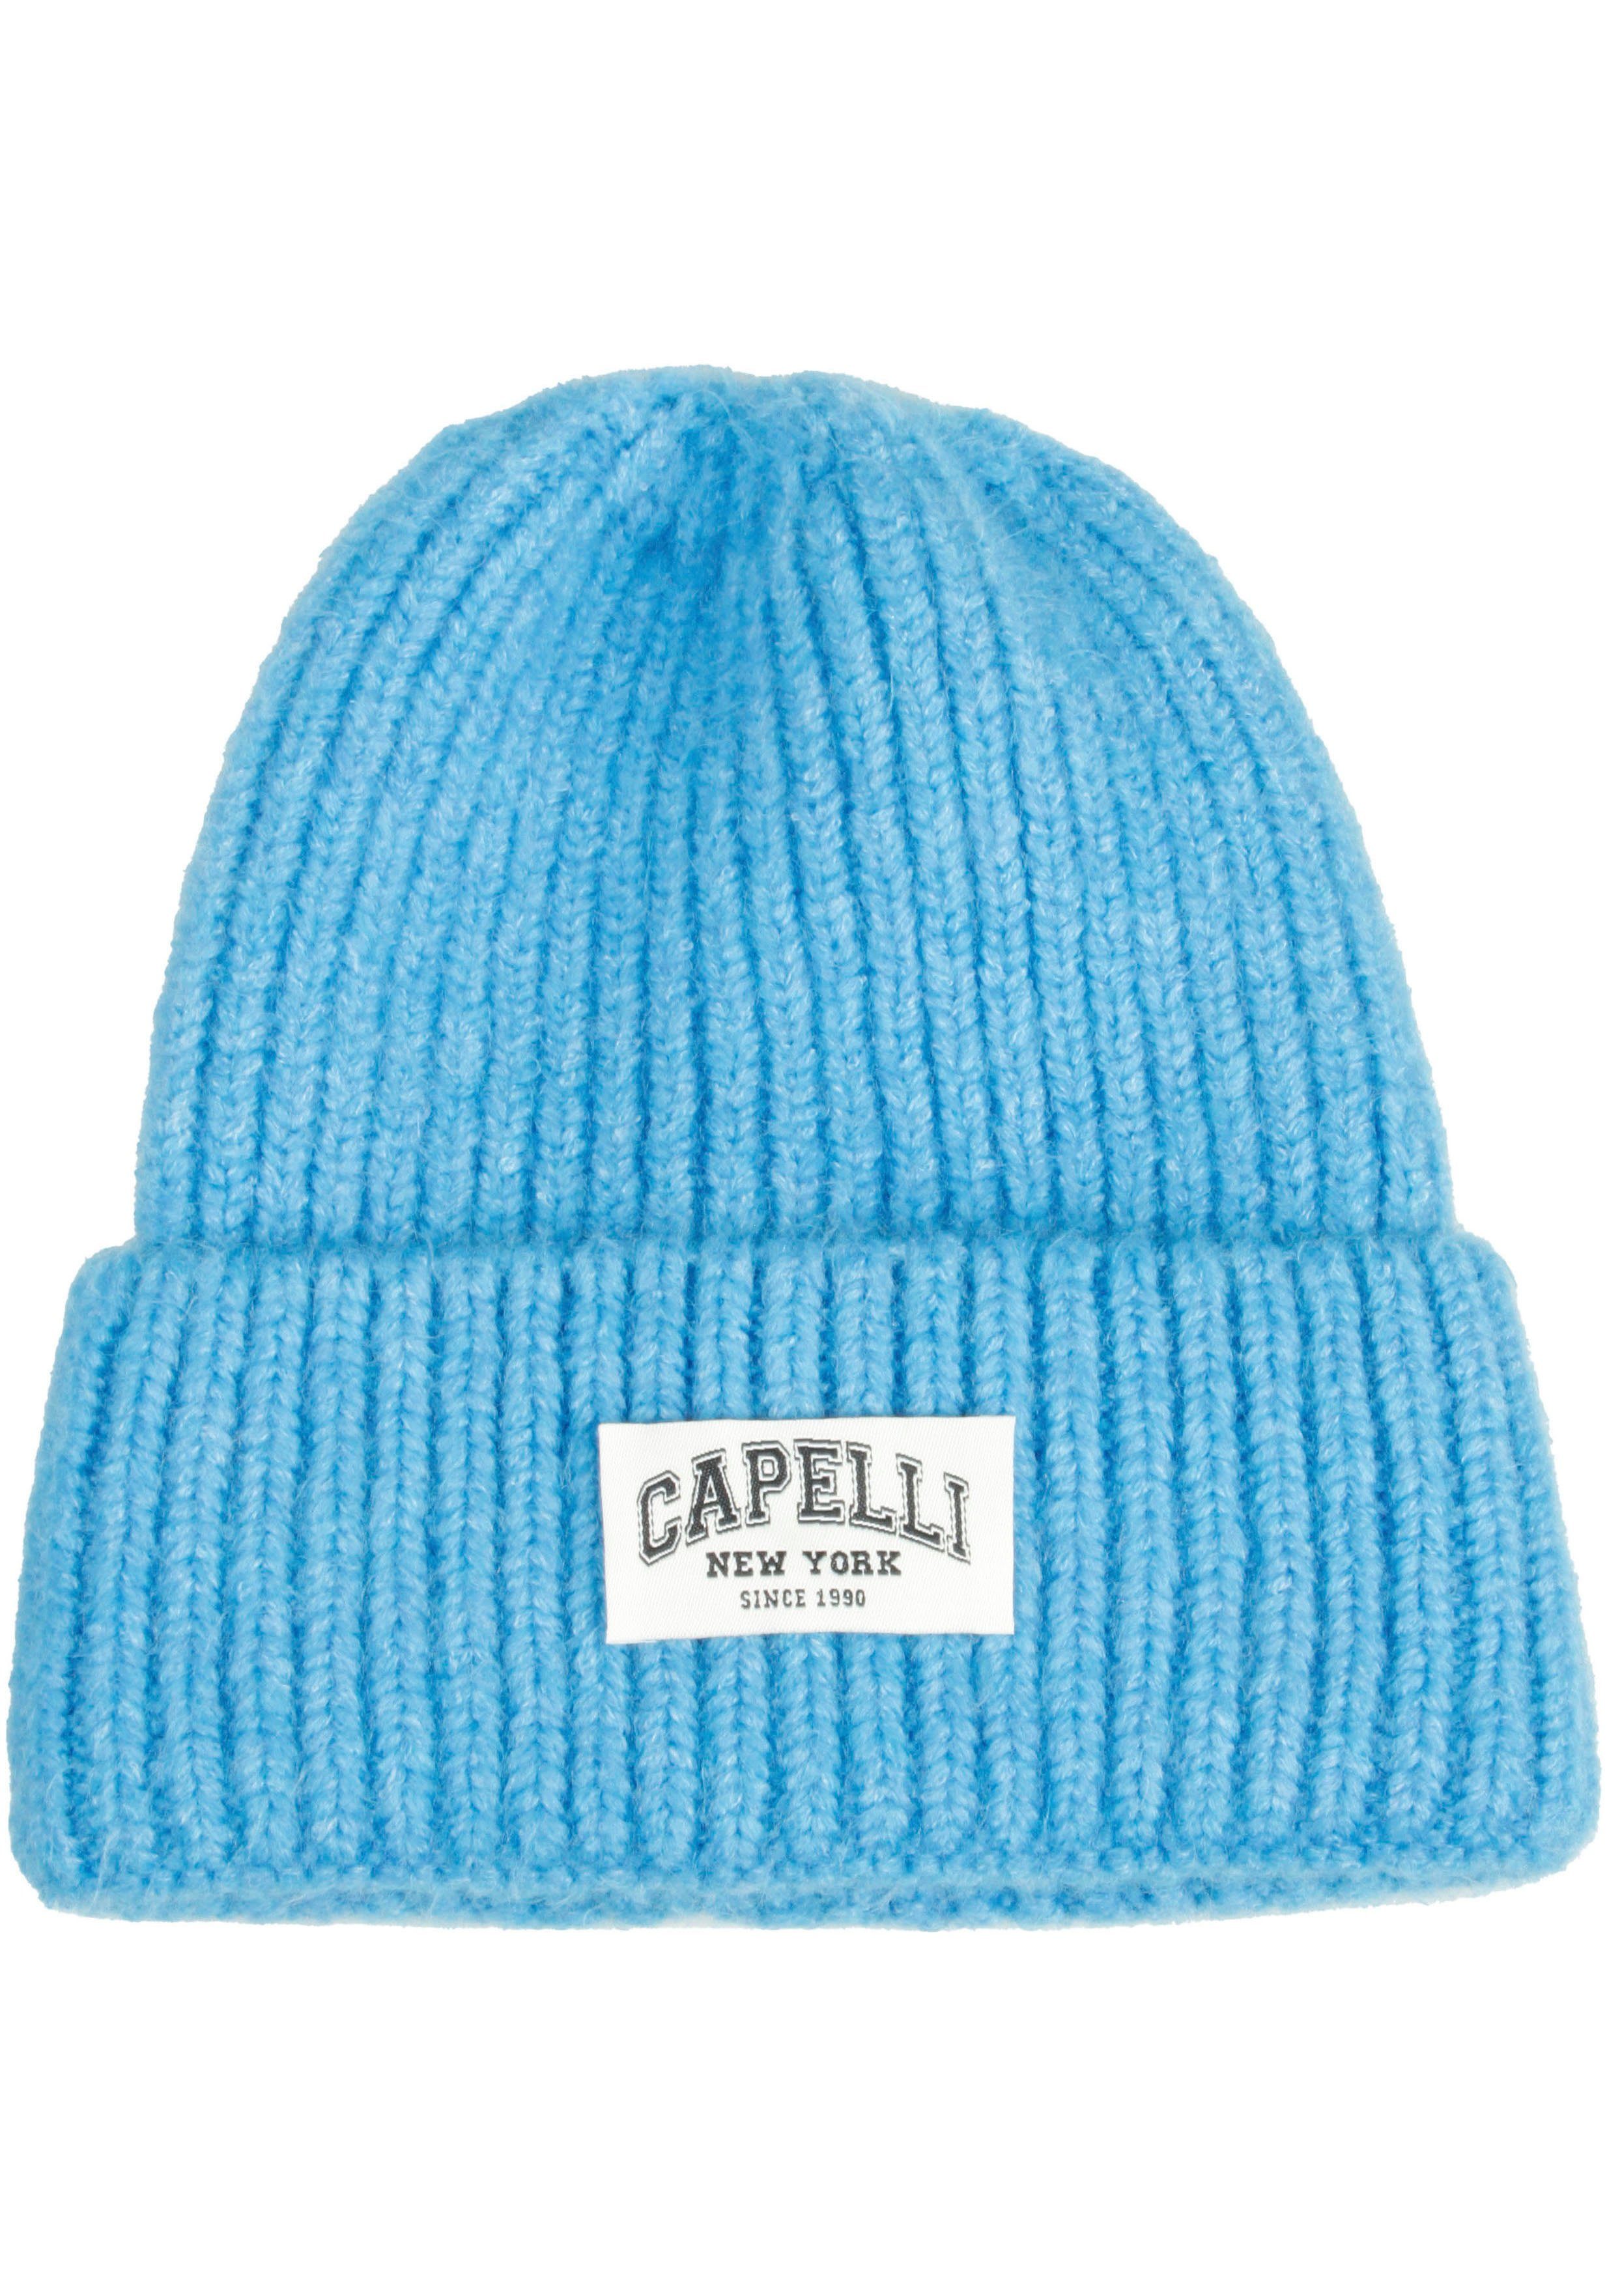 Capelli New Logo Strickmütze Umschalg, himmelblau-meliert York Breiter vorn